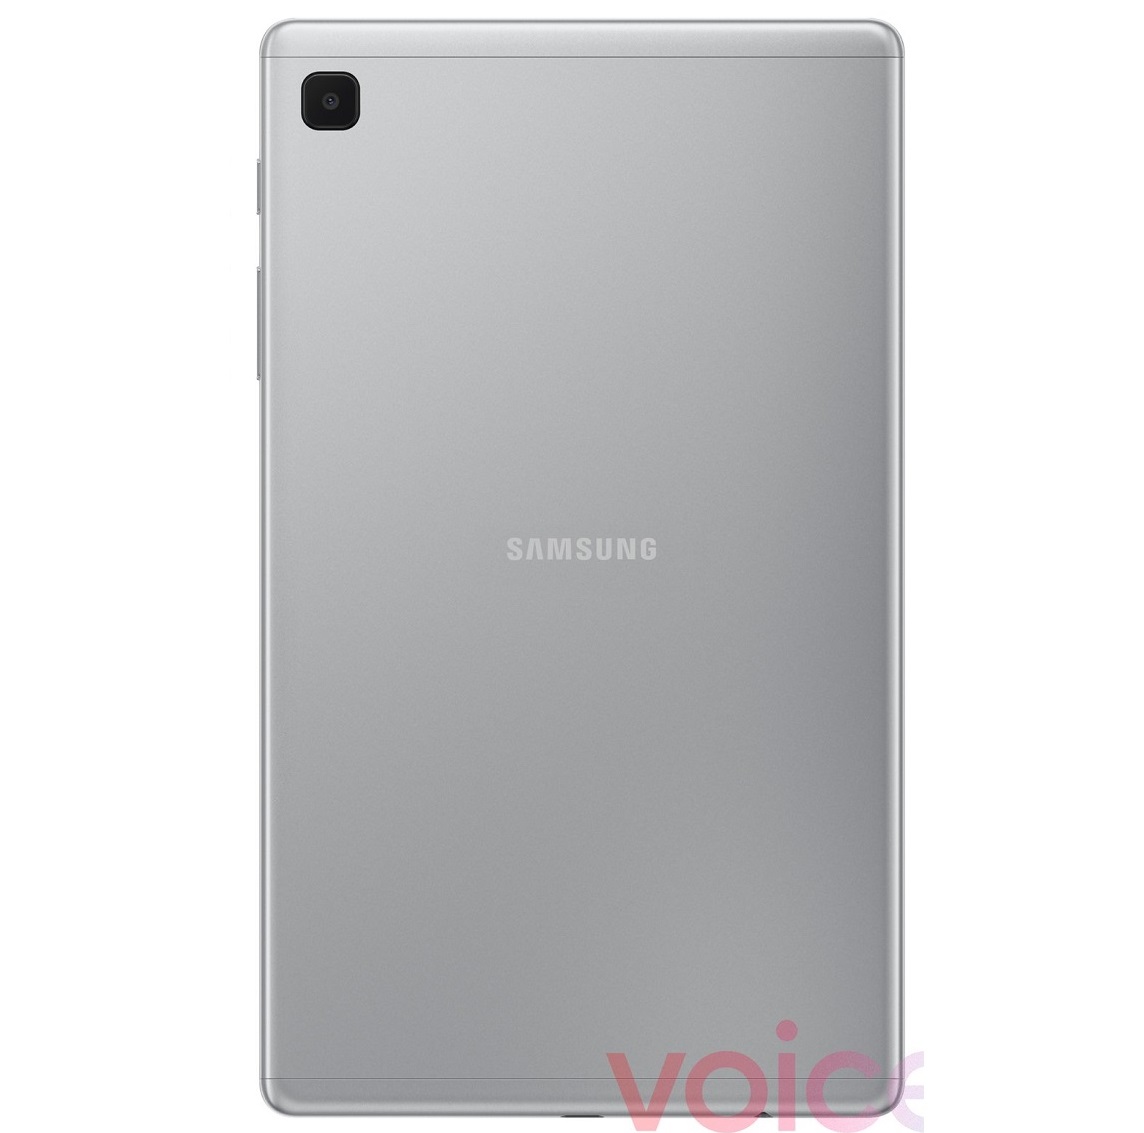 Опубликованы официальные изображения Samsung Galaxy Tab A7 Lite